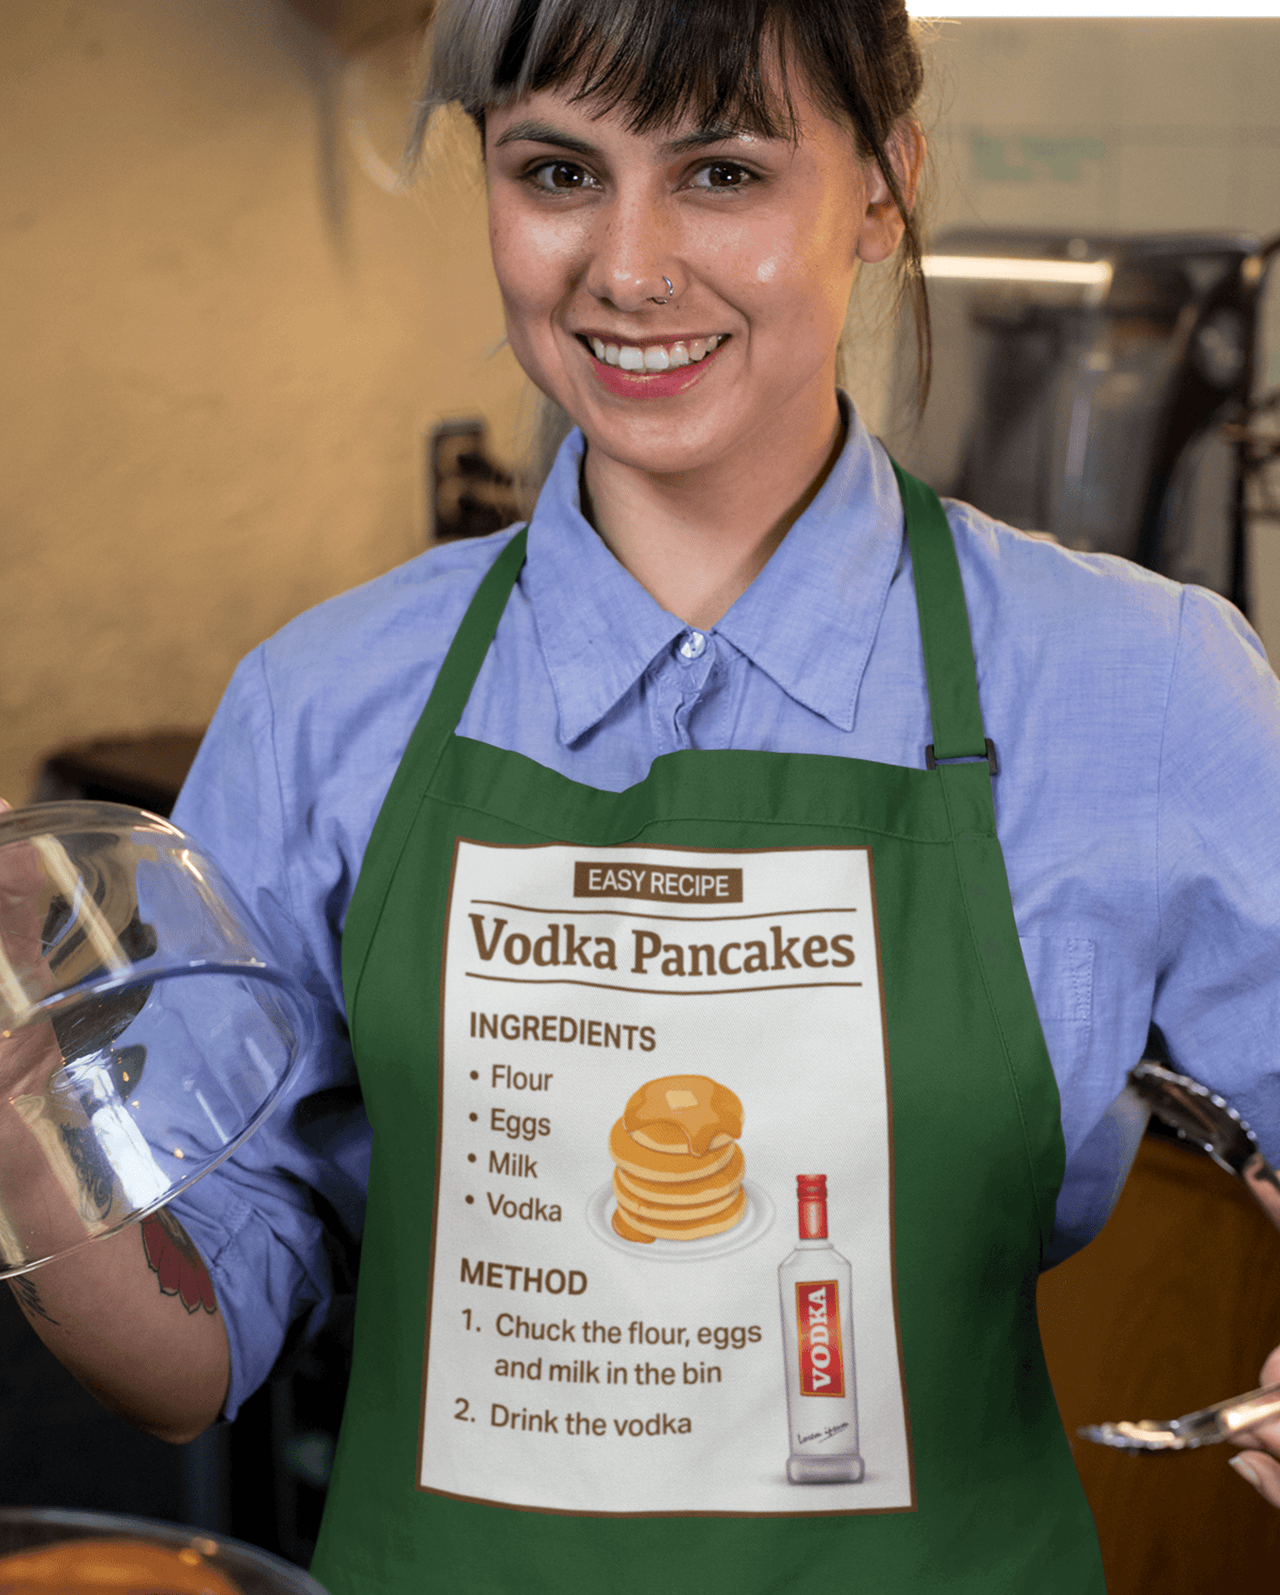 Vodka Pancakes Recipe Pancake Day Cotton Kitchen Apron 8Ball